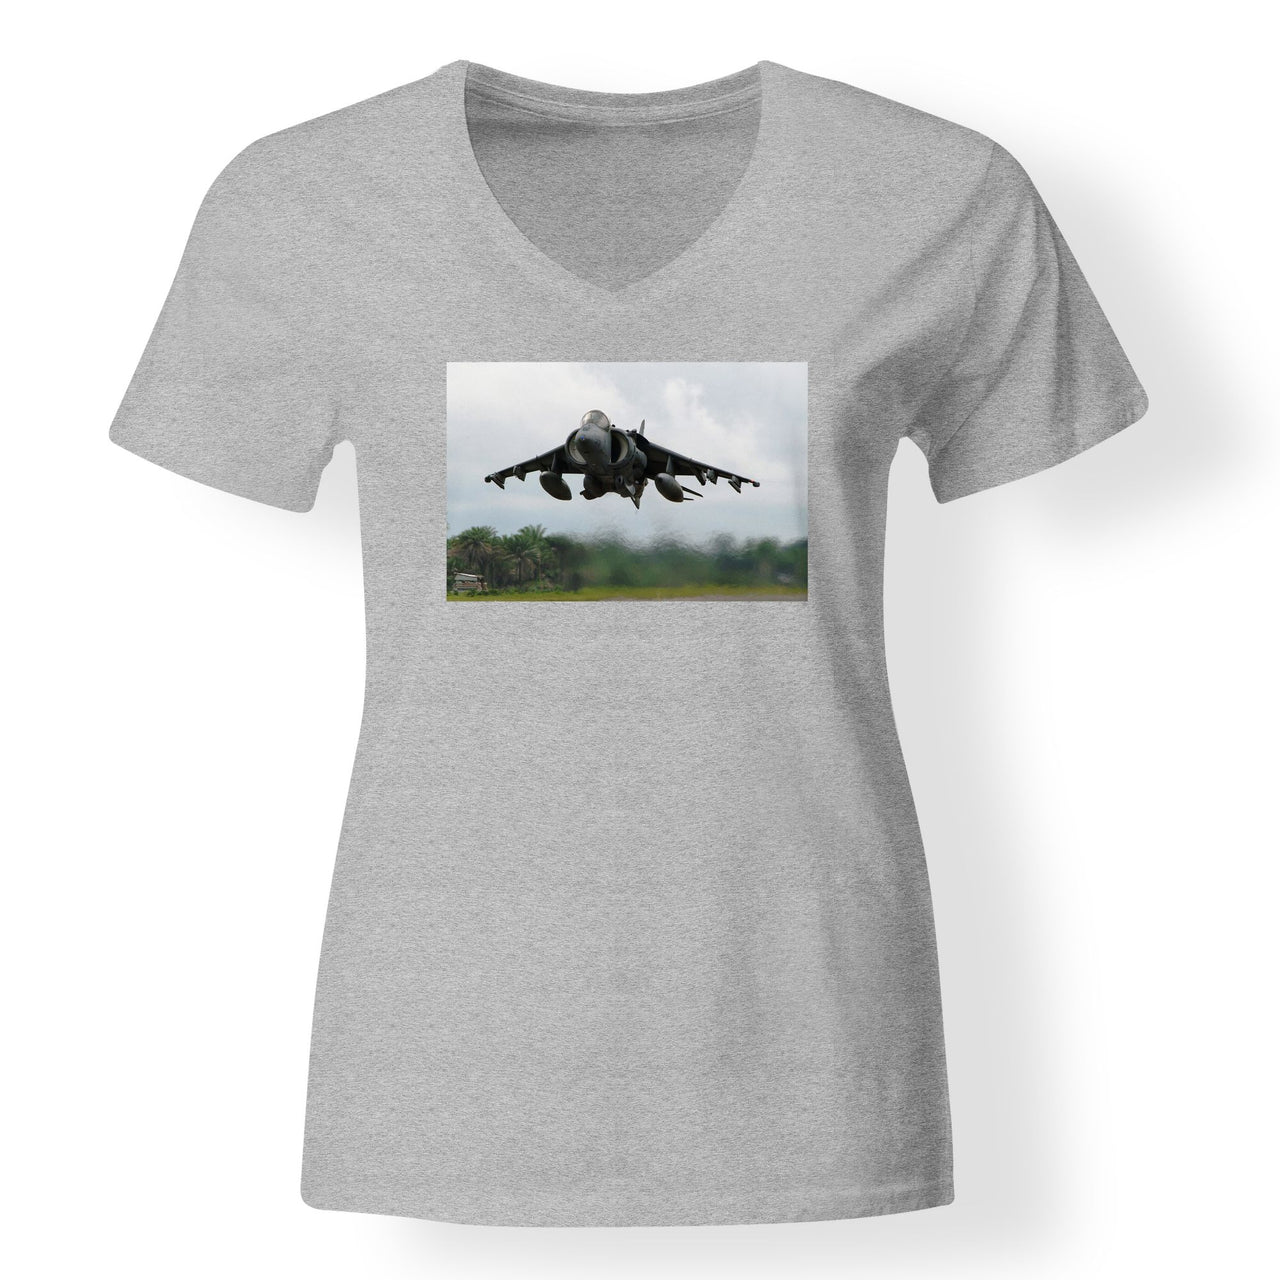 Departing Super Fighter Jet Designed V-Neck T-Shirts